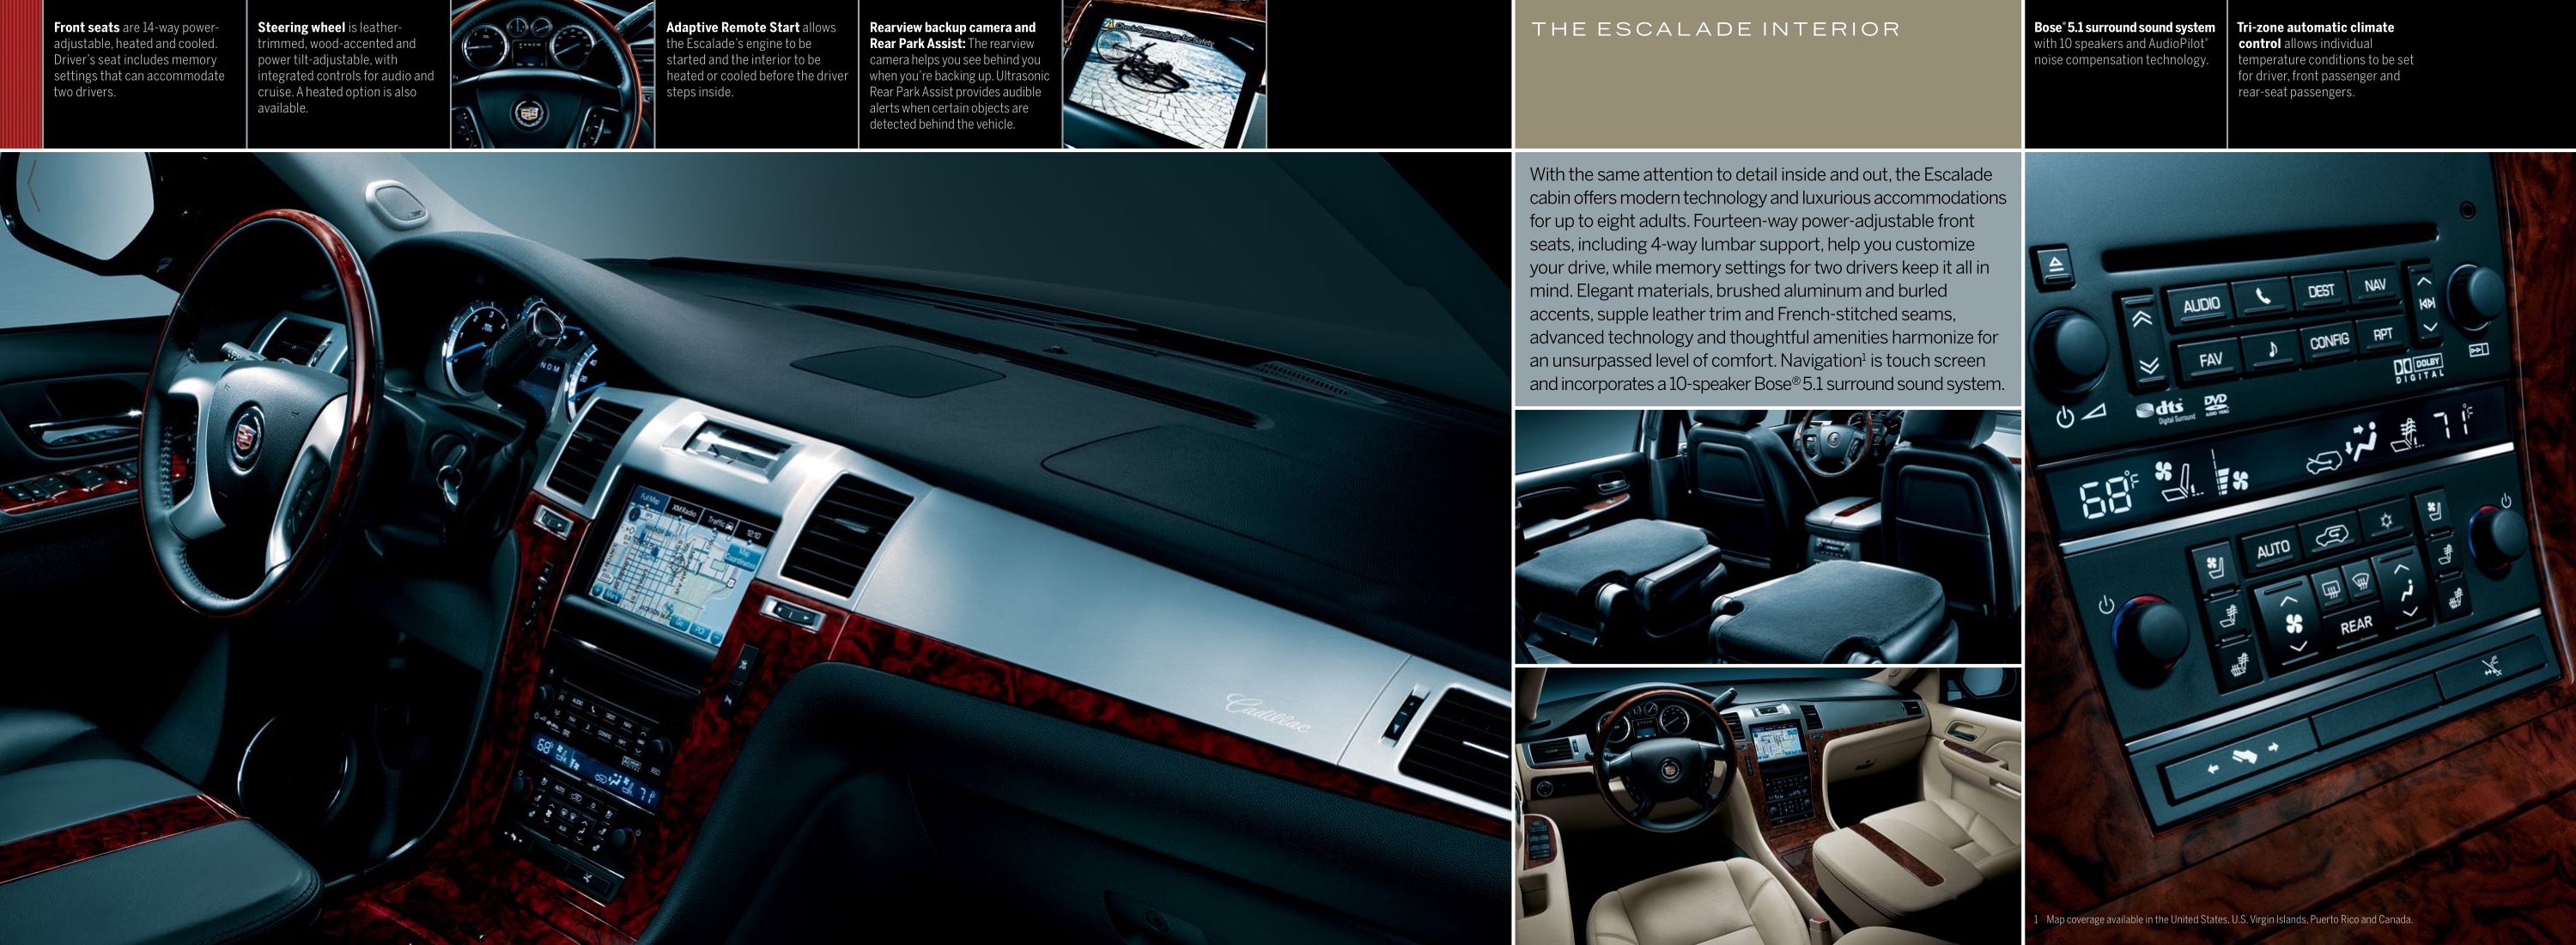 2011 Cadillac Escalade Brochure Page 7